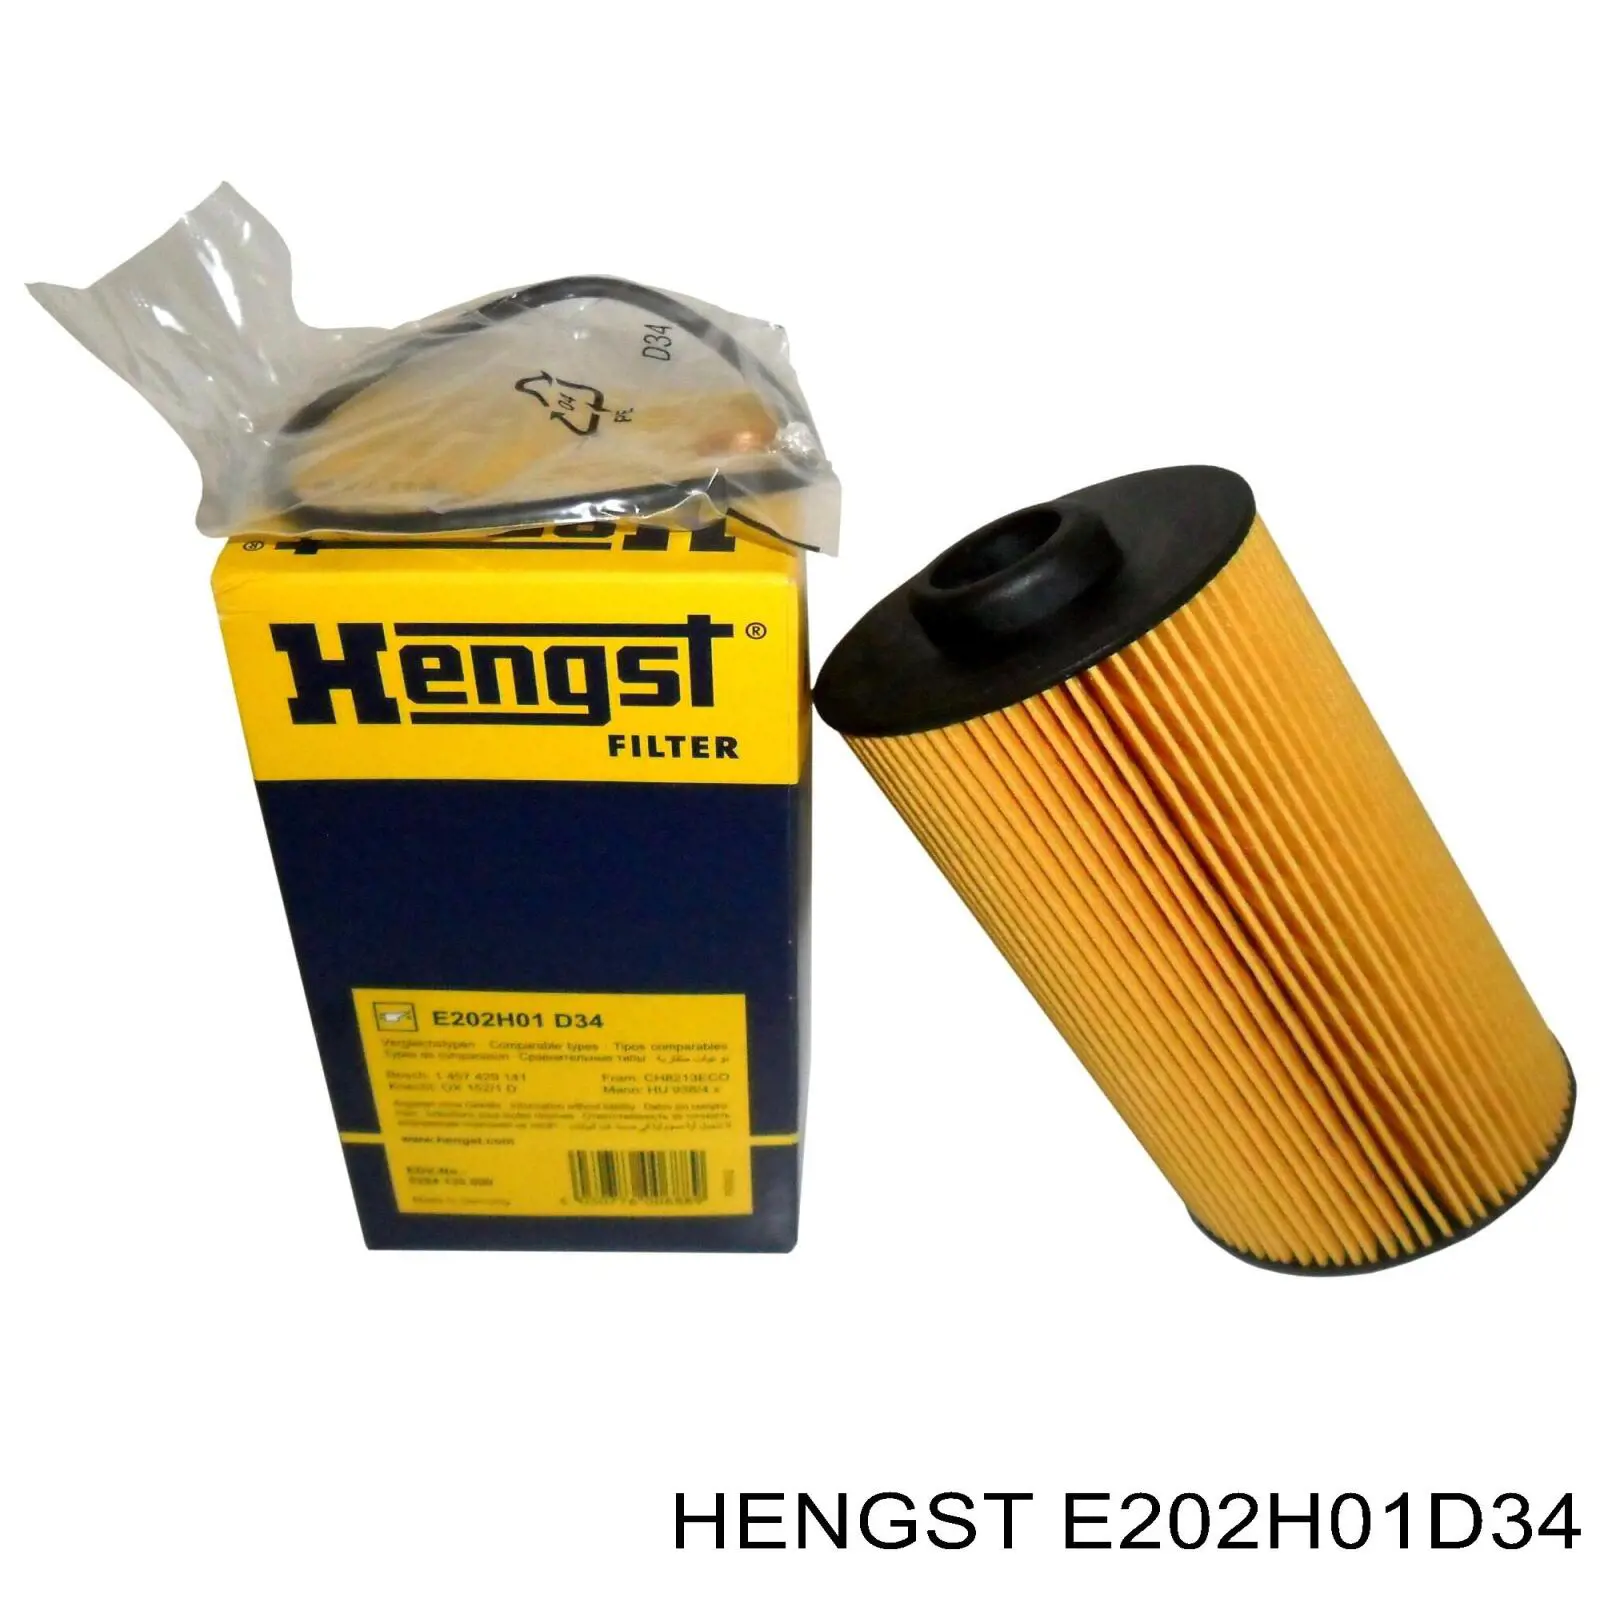 E202H01 D34 Hengst filtro de aceite